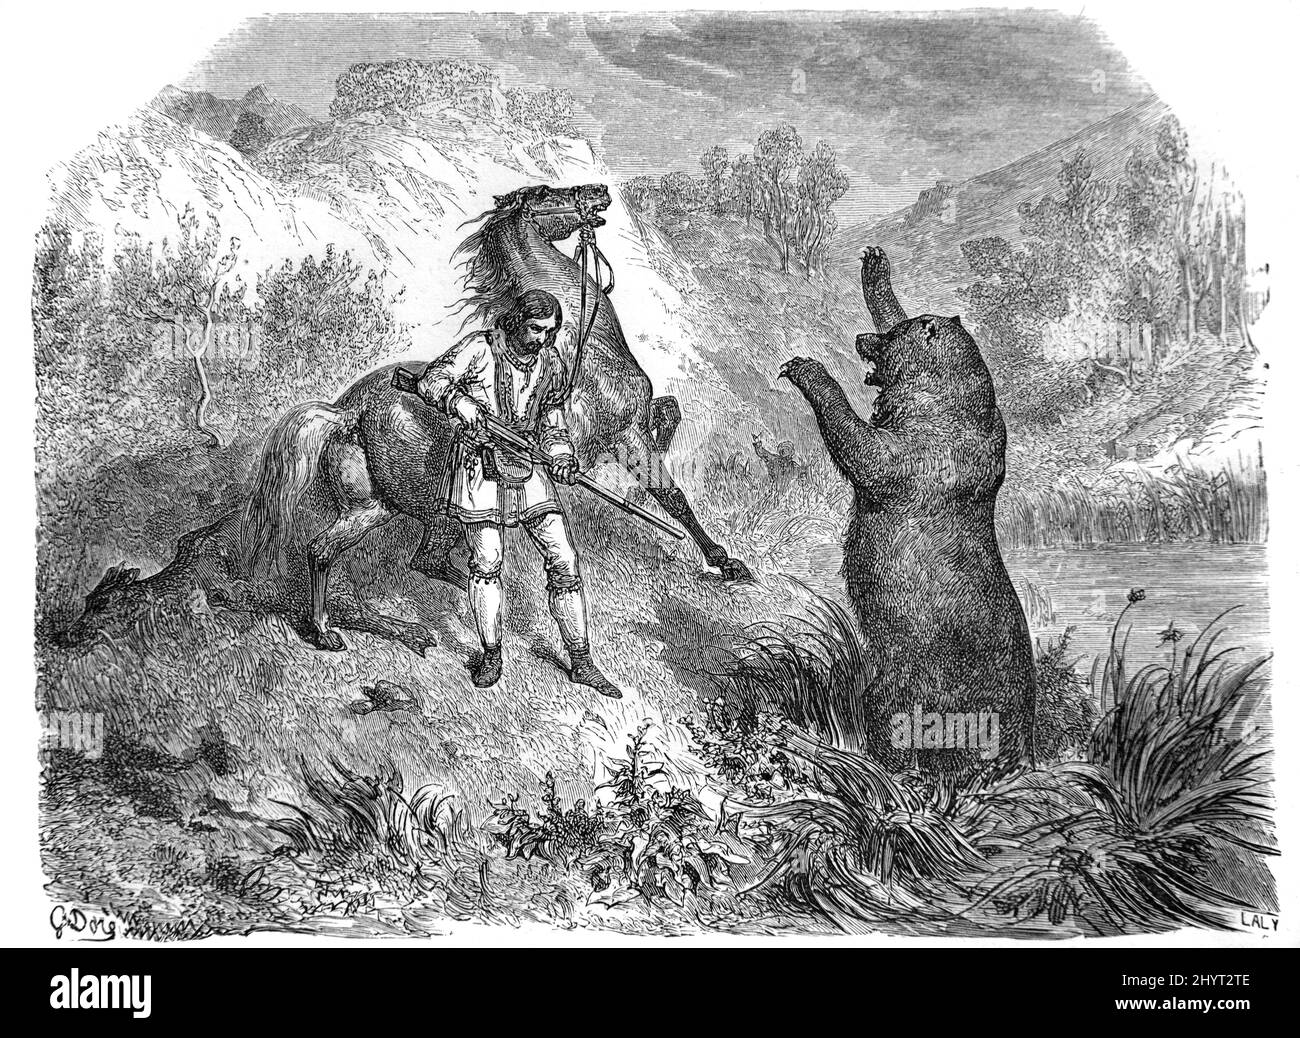 Le cowboy affronte l'ours grizzli en colère, Ursus arctos horribilis ou Bear Hunt dans les montagnes Rocheuses aux États-Unis, aux États-Unis ou aux États-Unis d'Amérique. Illustration ancienne ou gravure 1860. Banque D'Images